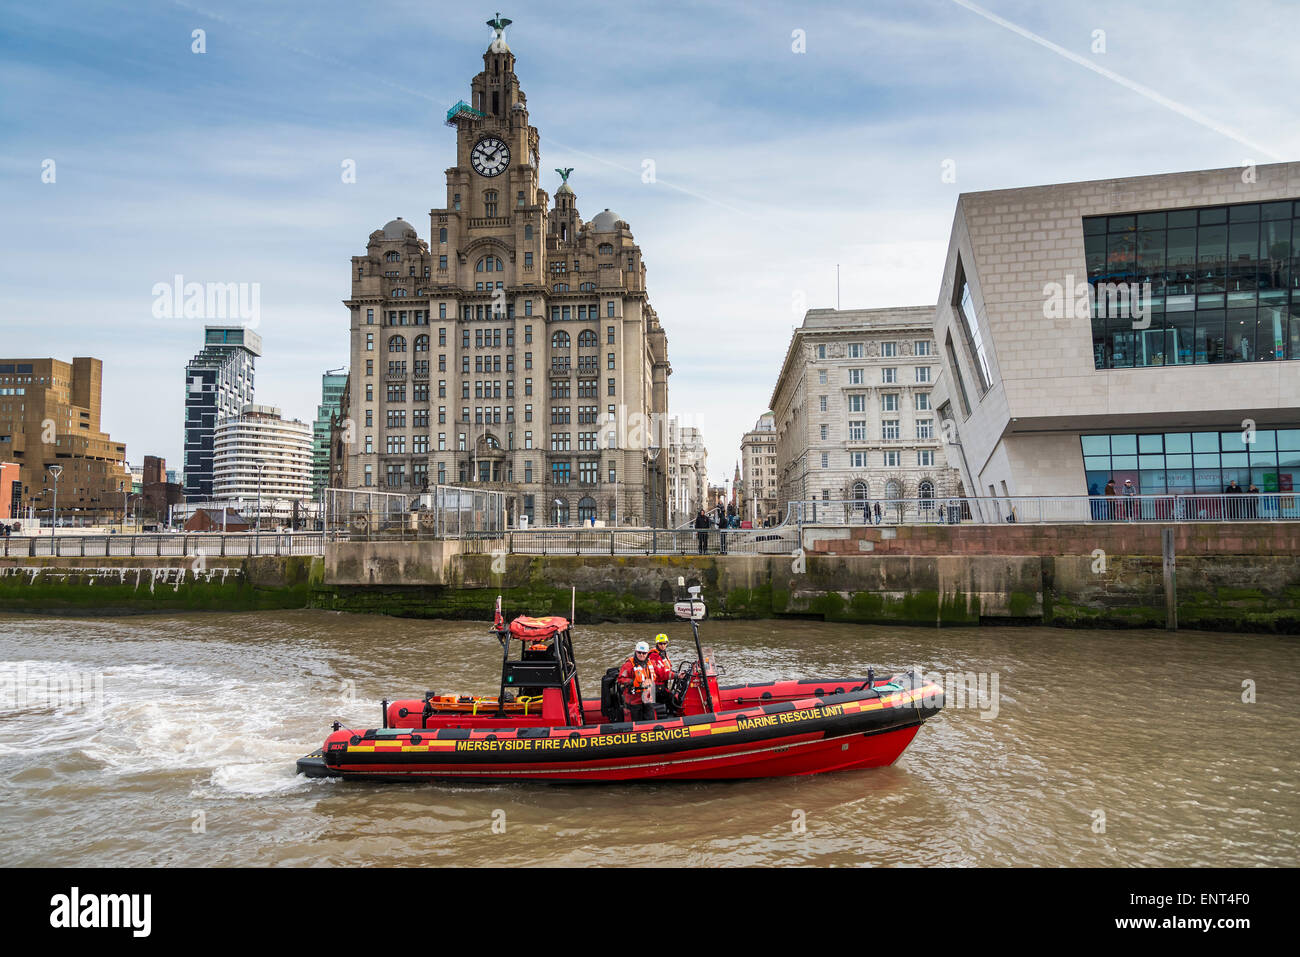 Merseyside Fire and Rescue Service Unité de sauvetage maritime au lancement avec le Liverpool pierhead Royal Liver Building derrière. Banque D'Images